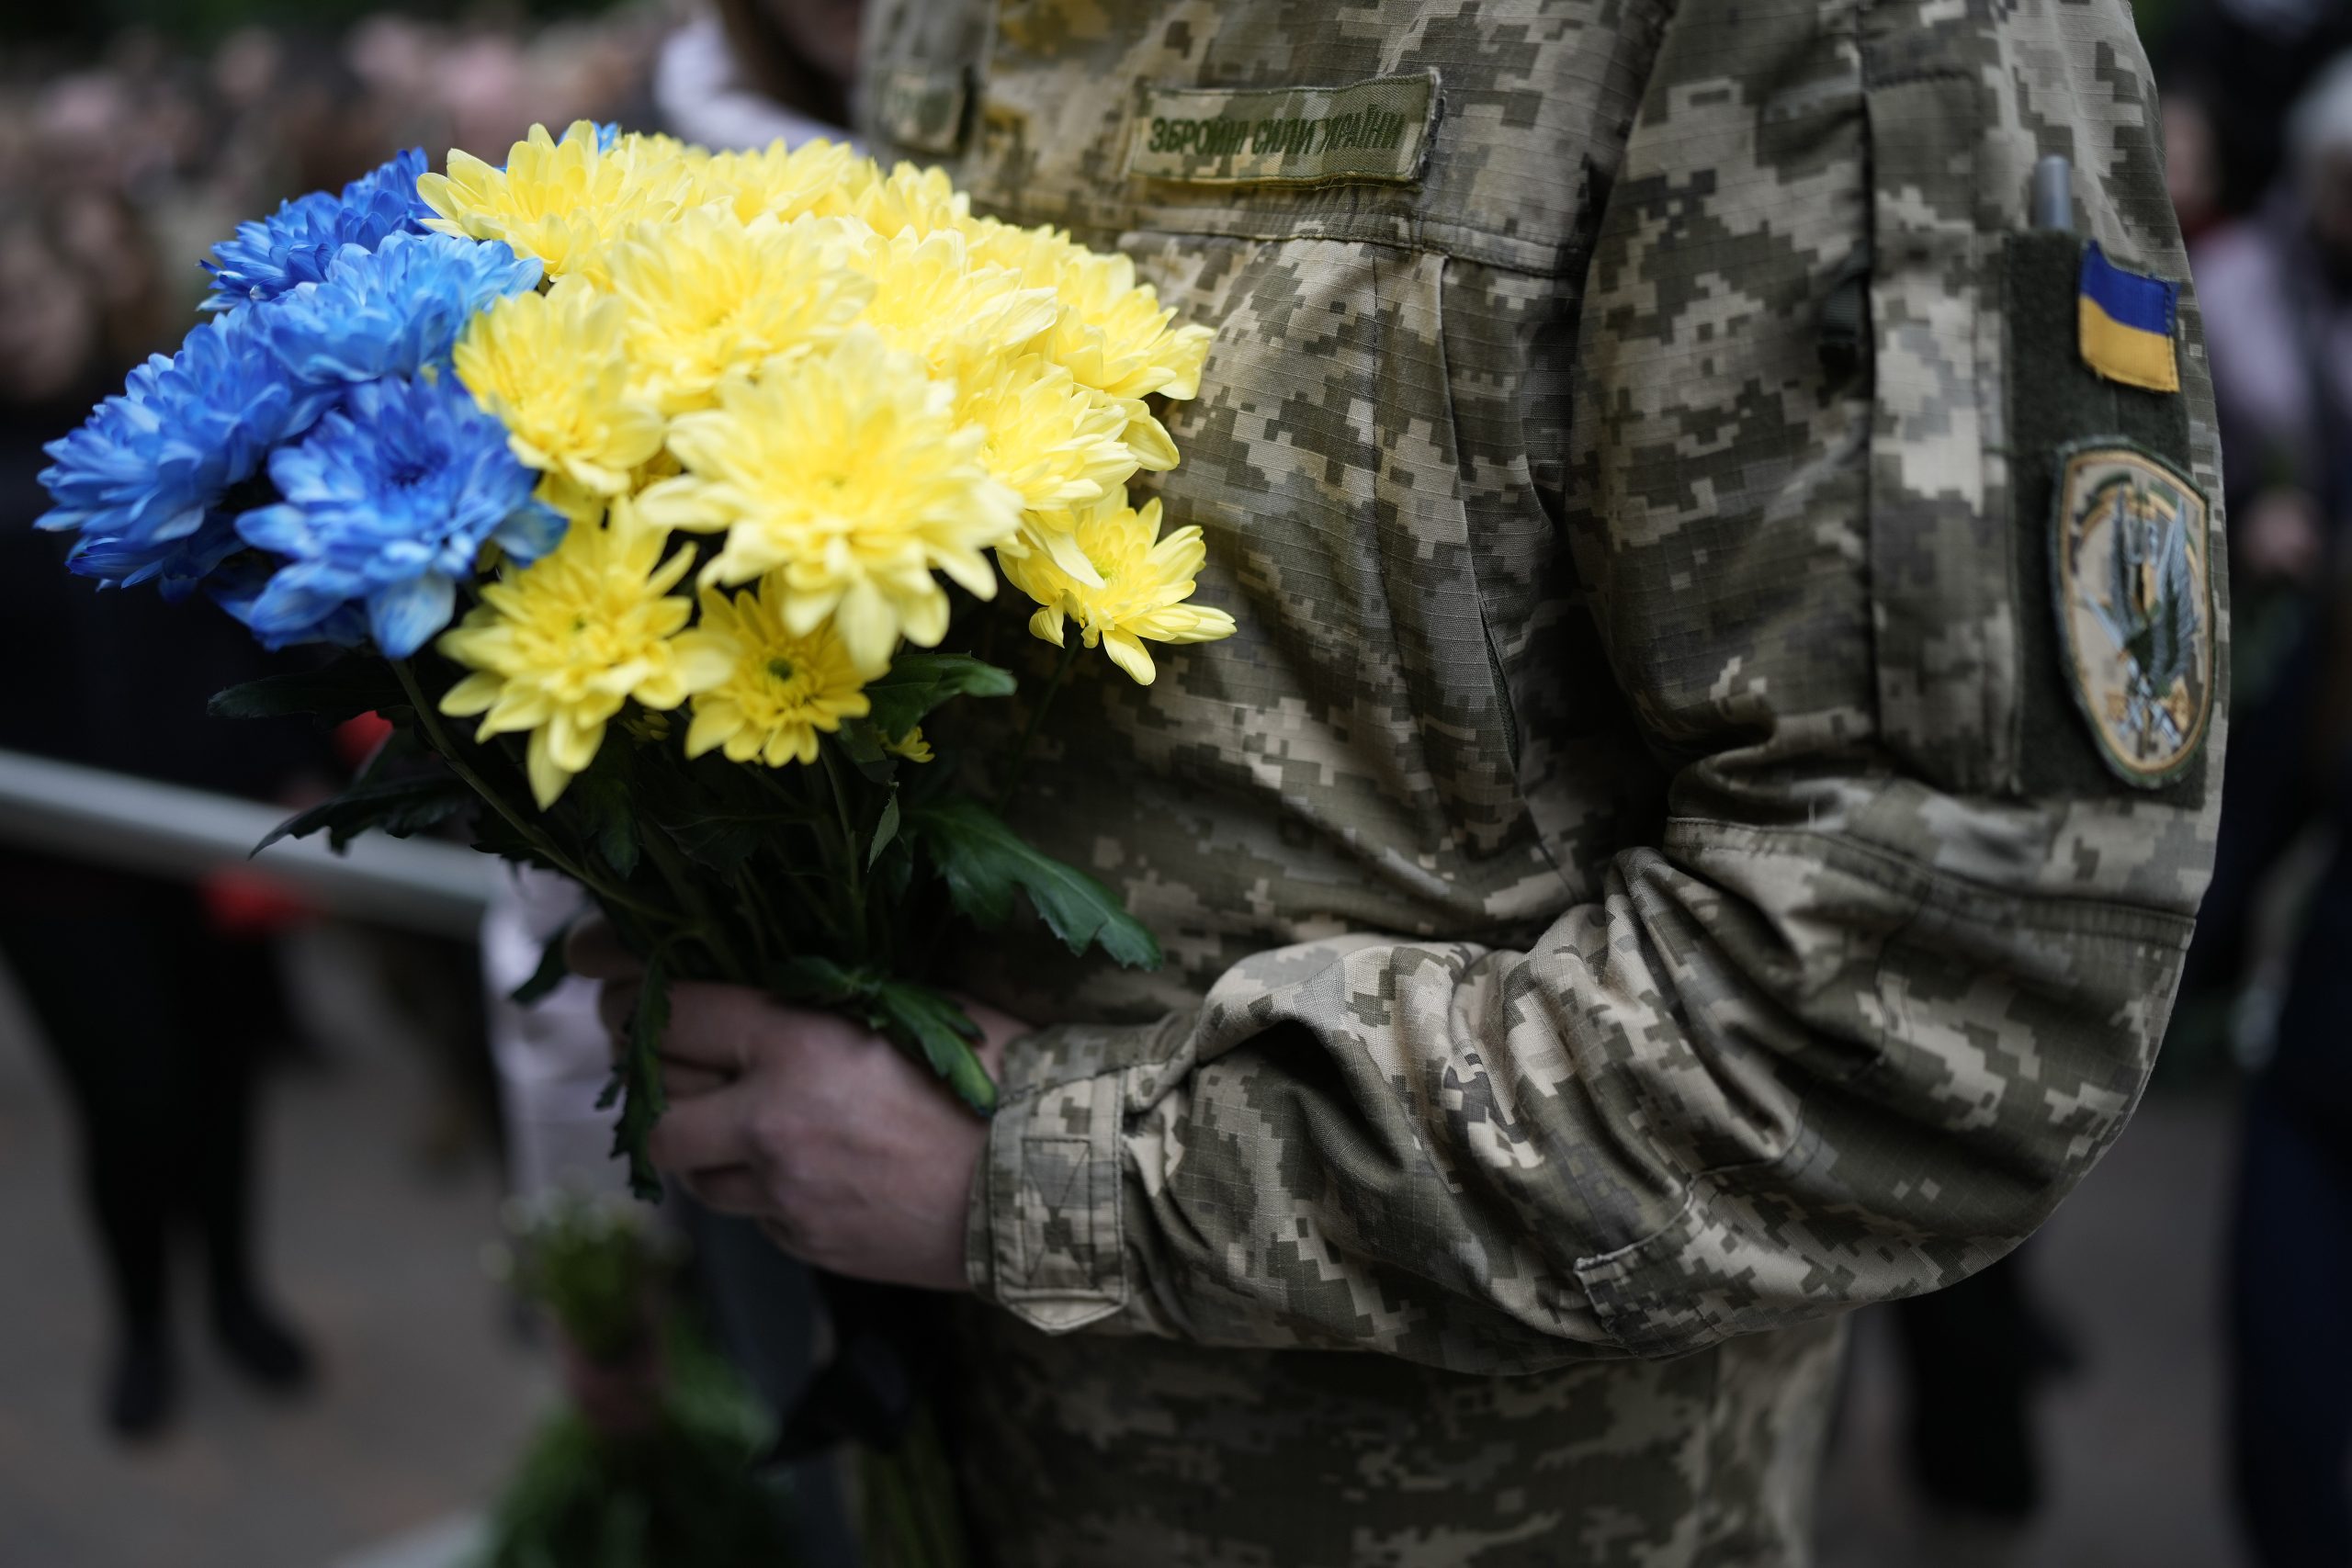 Ein ukrainischer Soldat hält einen Blumenstrauß mit gelben und blauen Blumen in den Händen. Das Bild illustriert den Kommentar über die Angst vor dem Sieg im Ukrainekrieg.